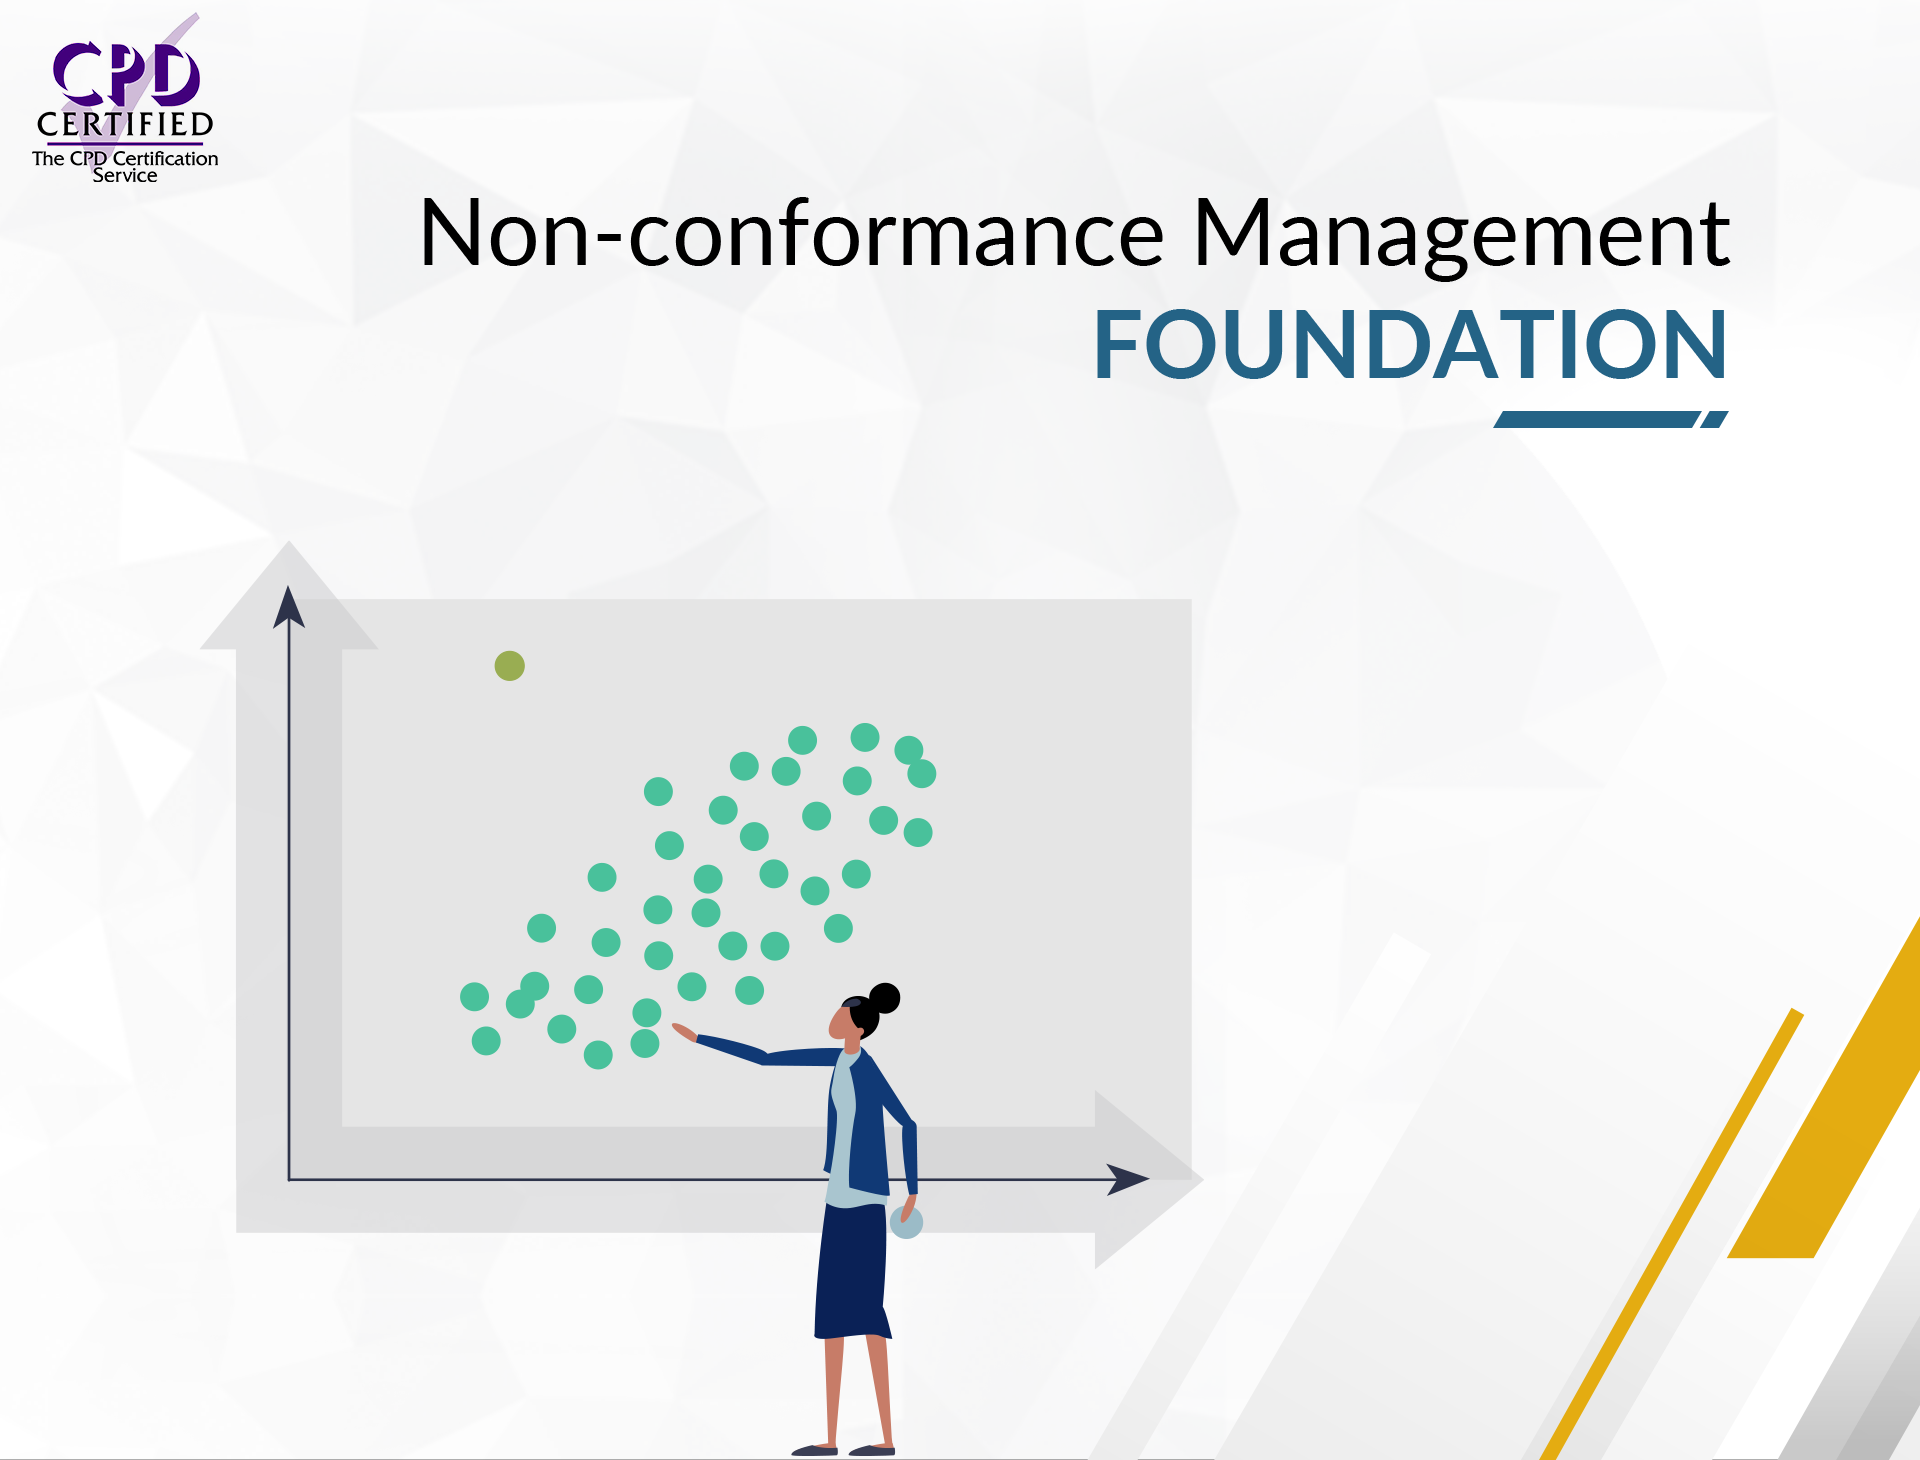 Non-conformance Management Foundation